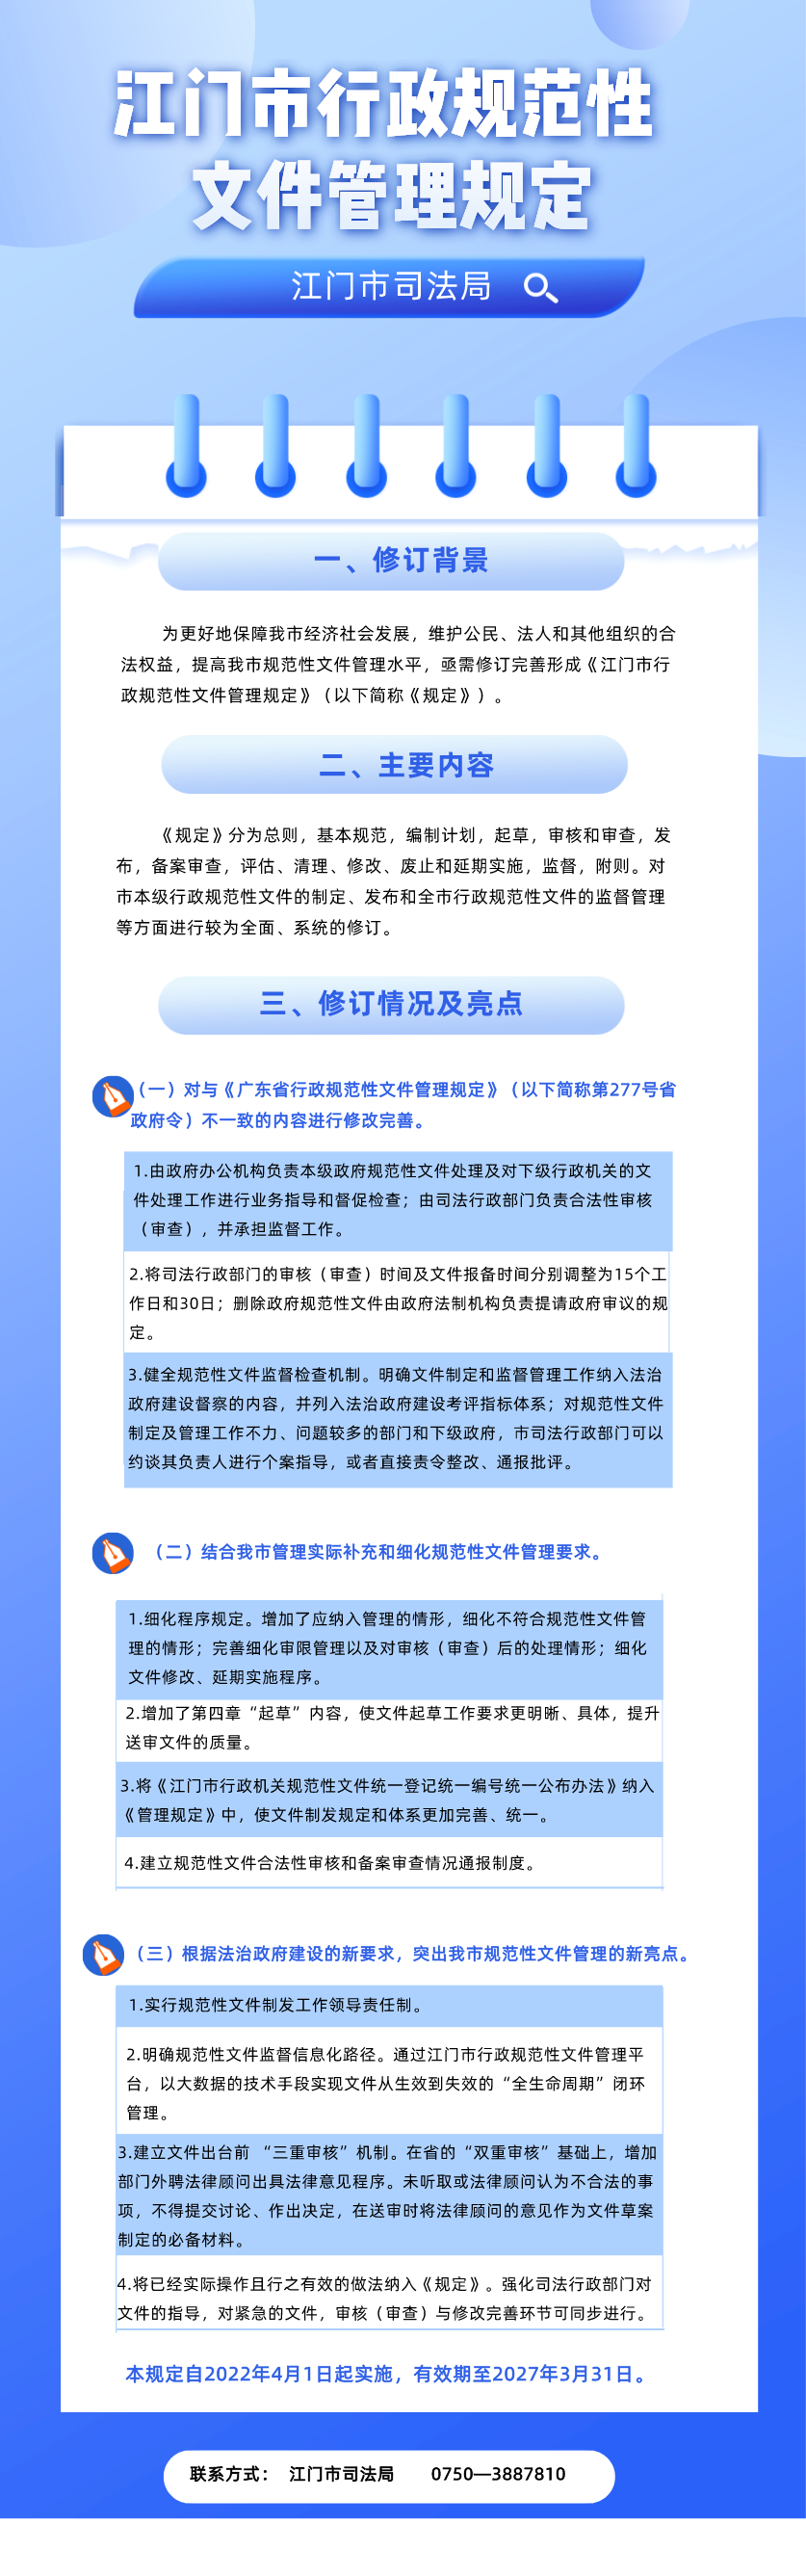 《江门市行政规范性文件管理规定》图解 (1)(1).png